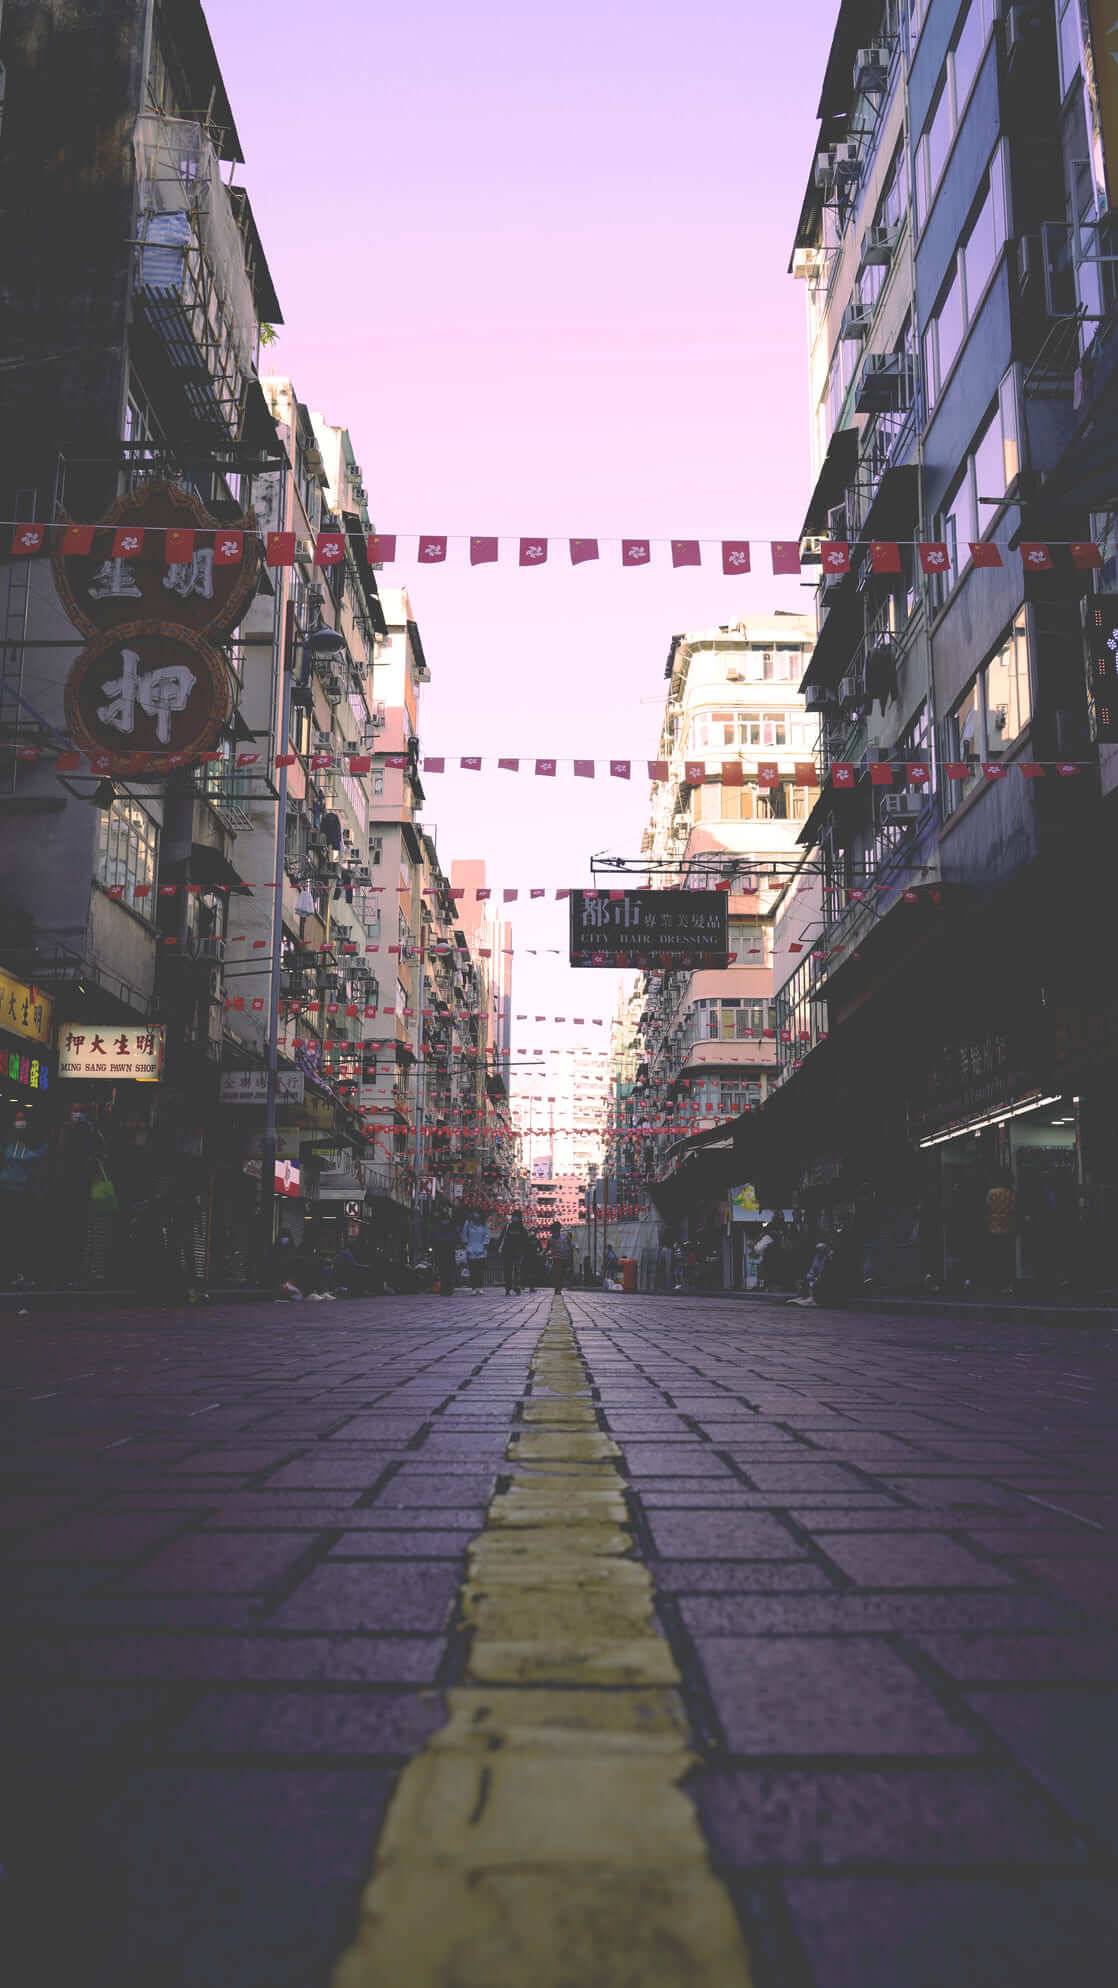 Hong Kong street view by Ajay Jakhi